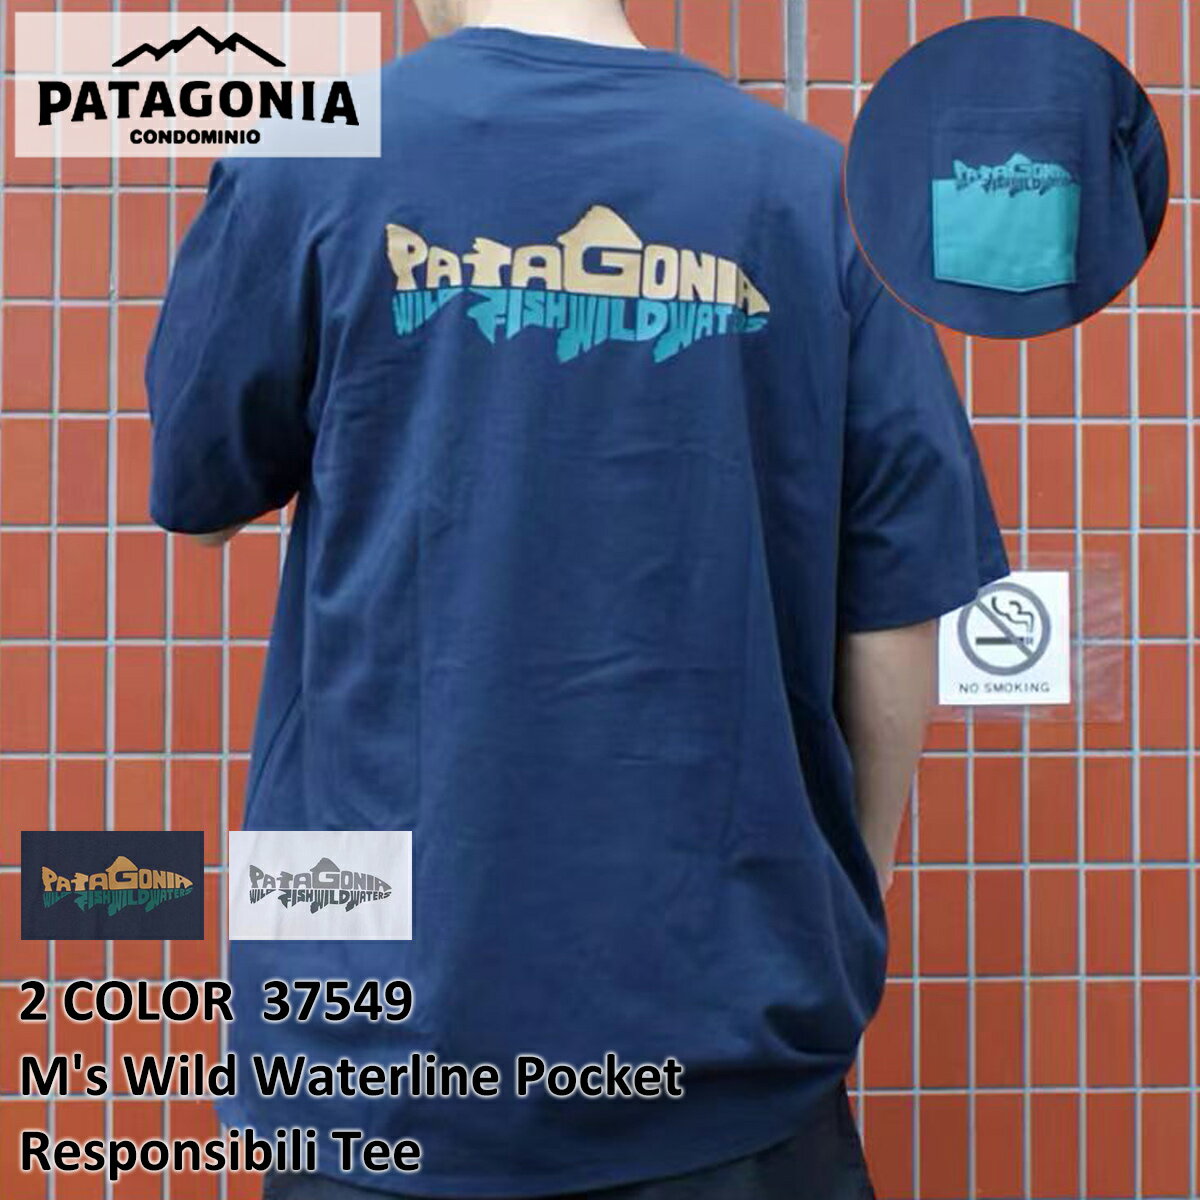 送料無料 新品 パタゴニア Patagonia ...の商品画像